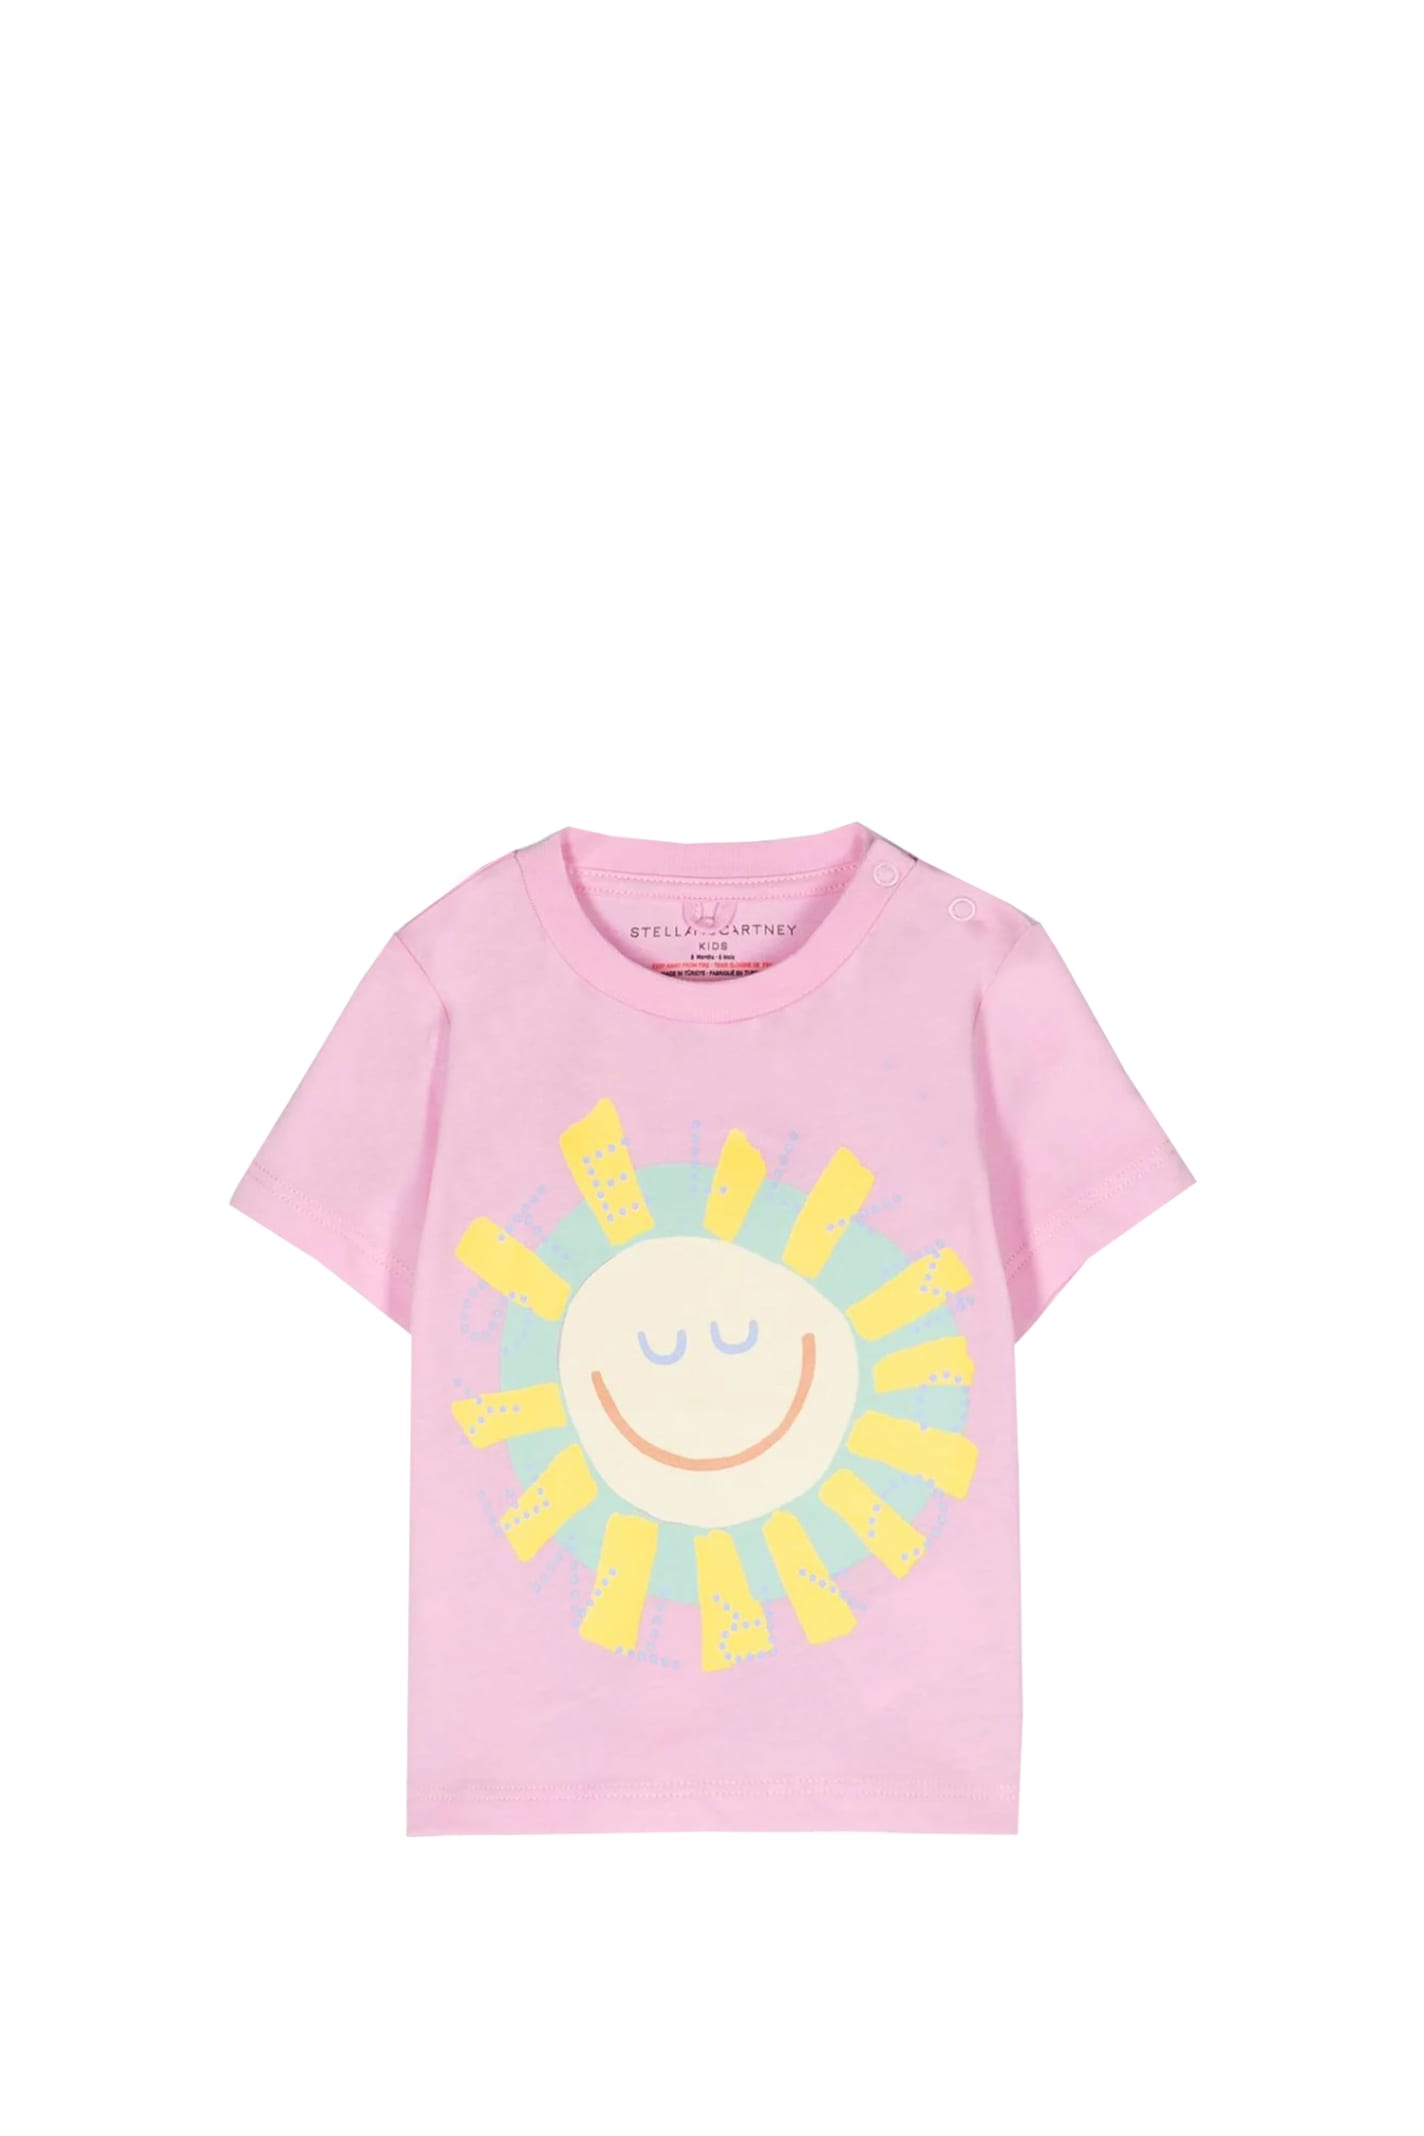 Stella Mccartney Babies' Cotton T-shirt In Rose